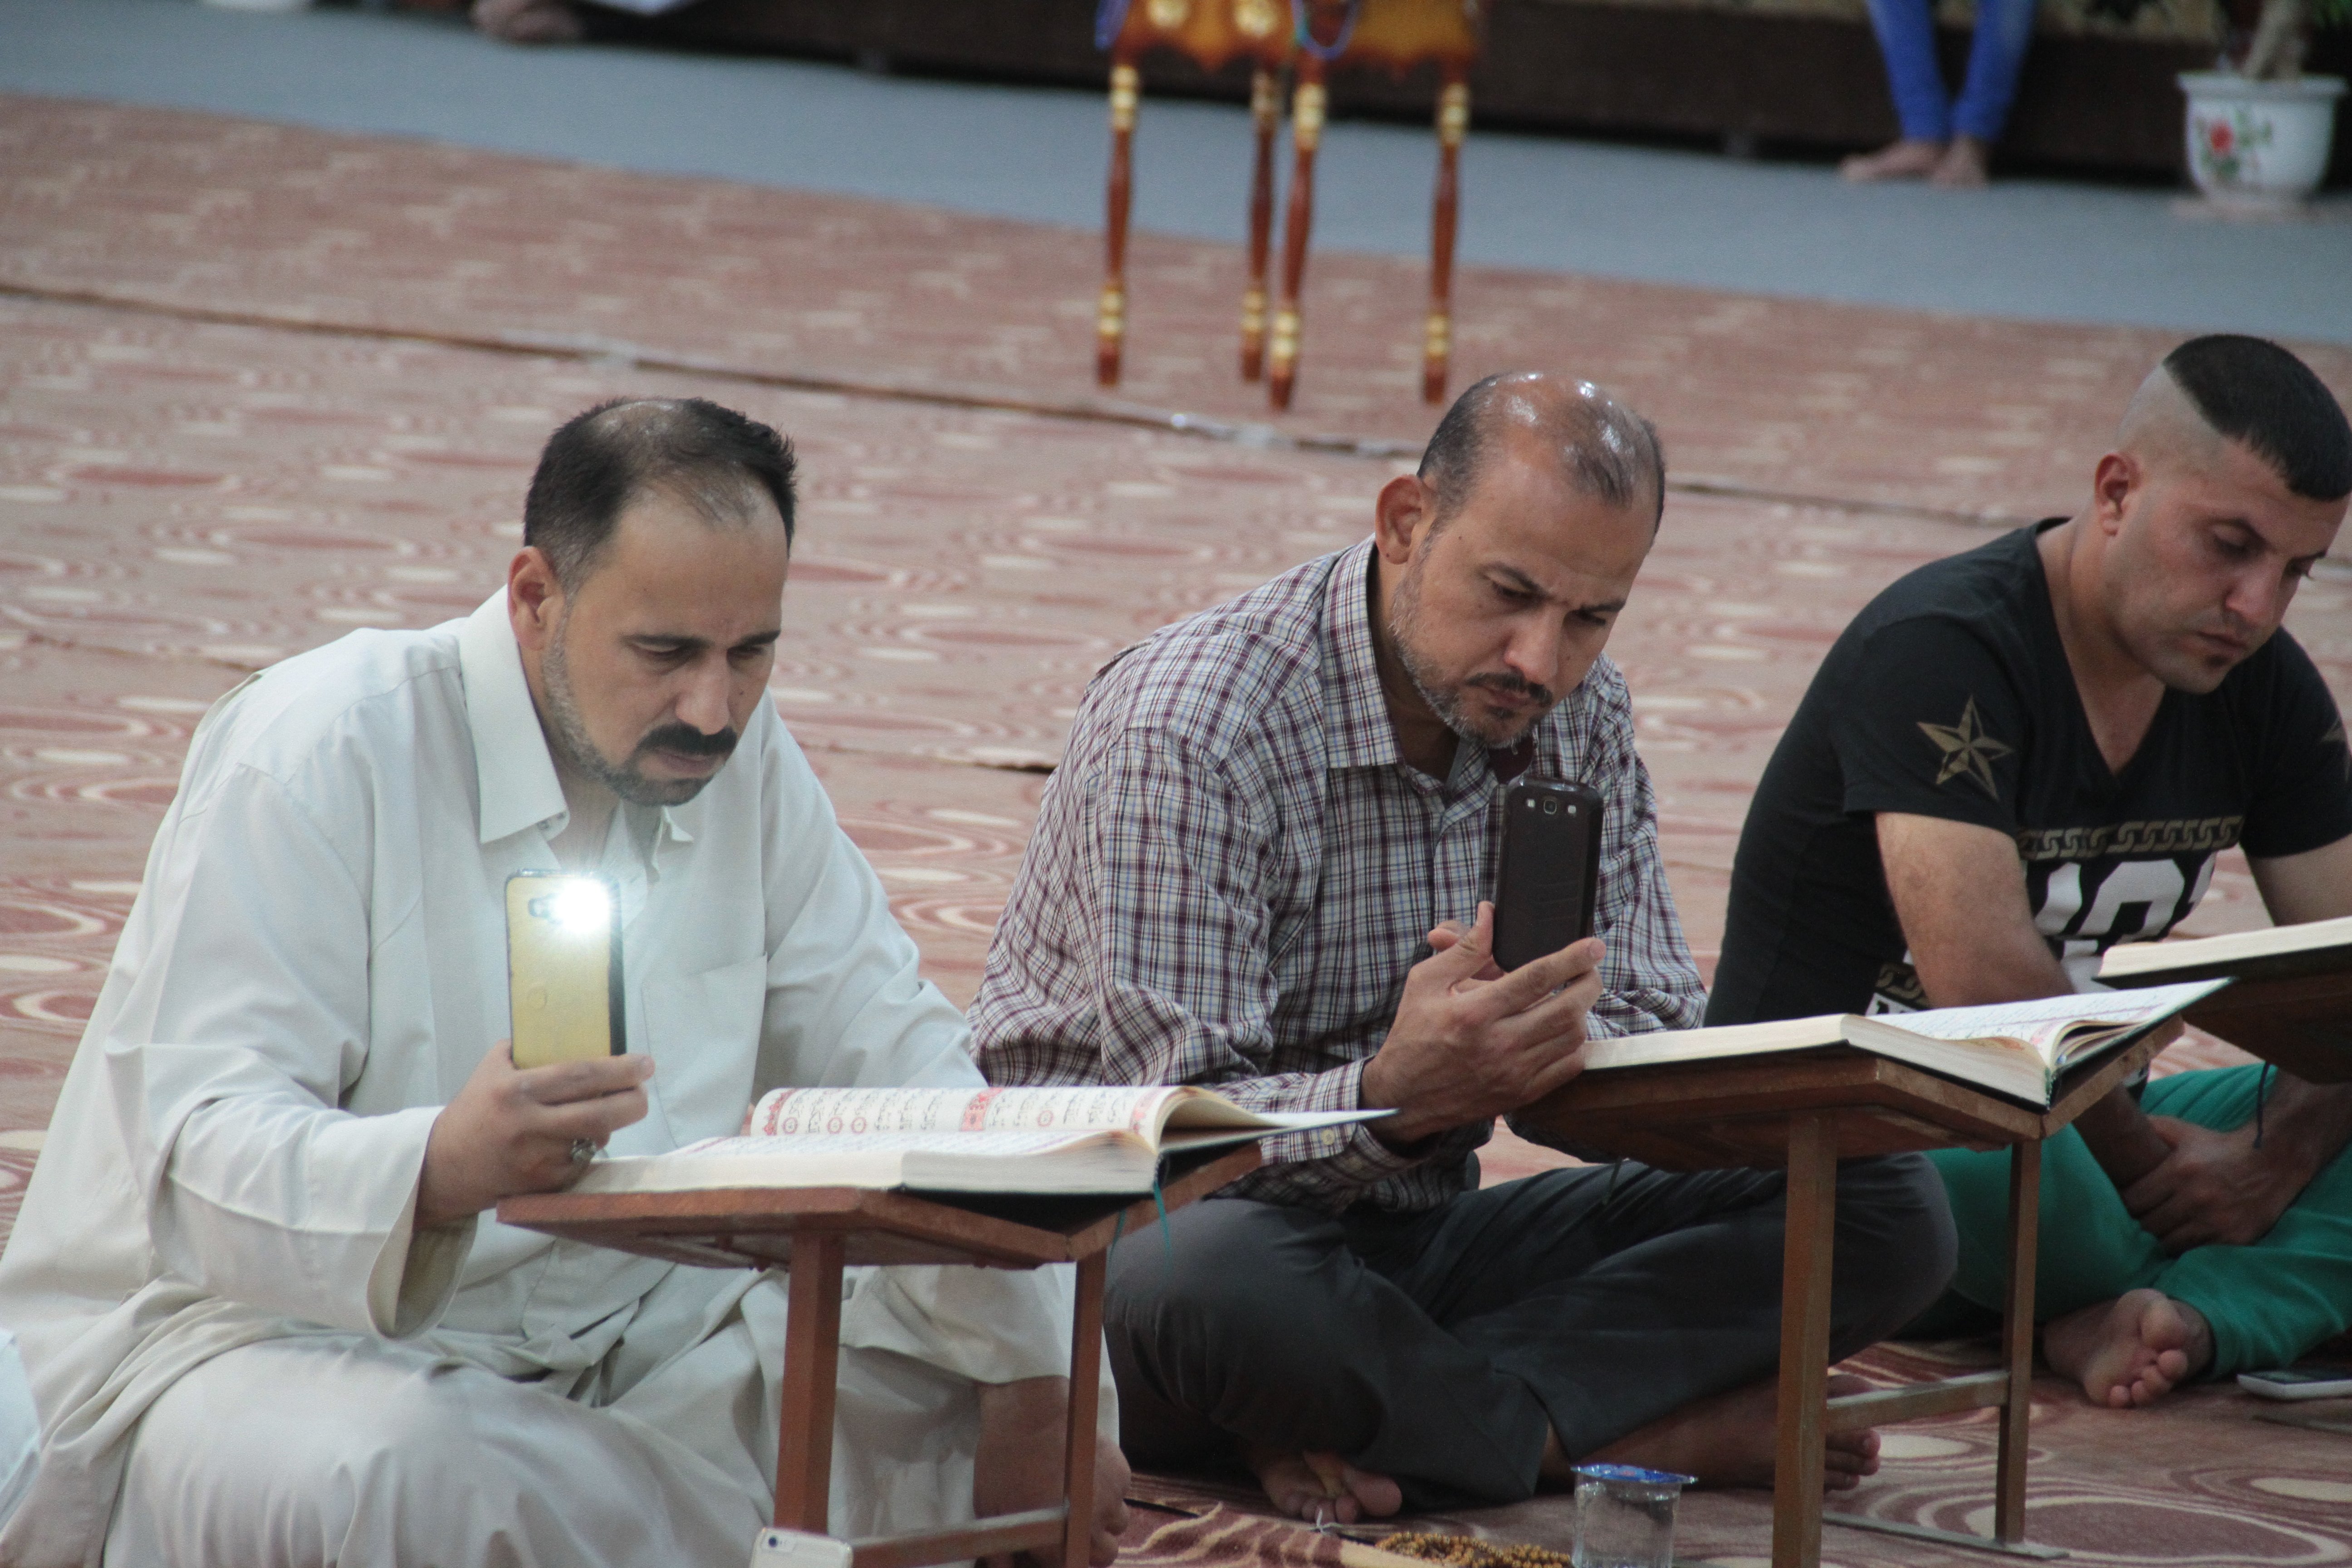 معهد القرآن الكريم يُقيم محفلاً قرآنياً بهيجاً في سدة الهندية بمناسبة عيد الغدير الأغر